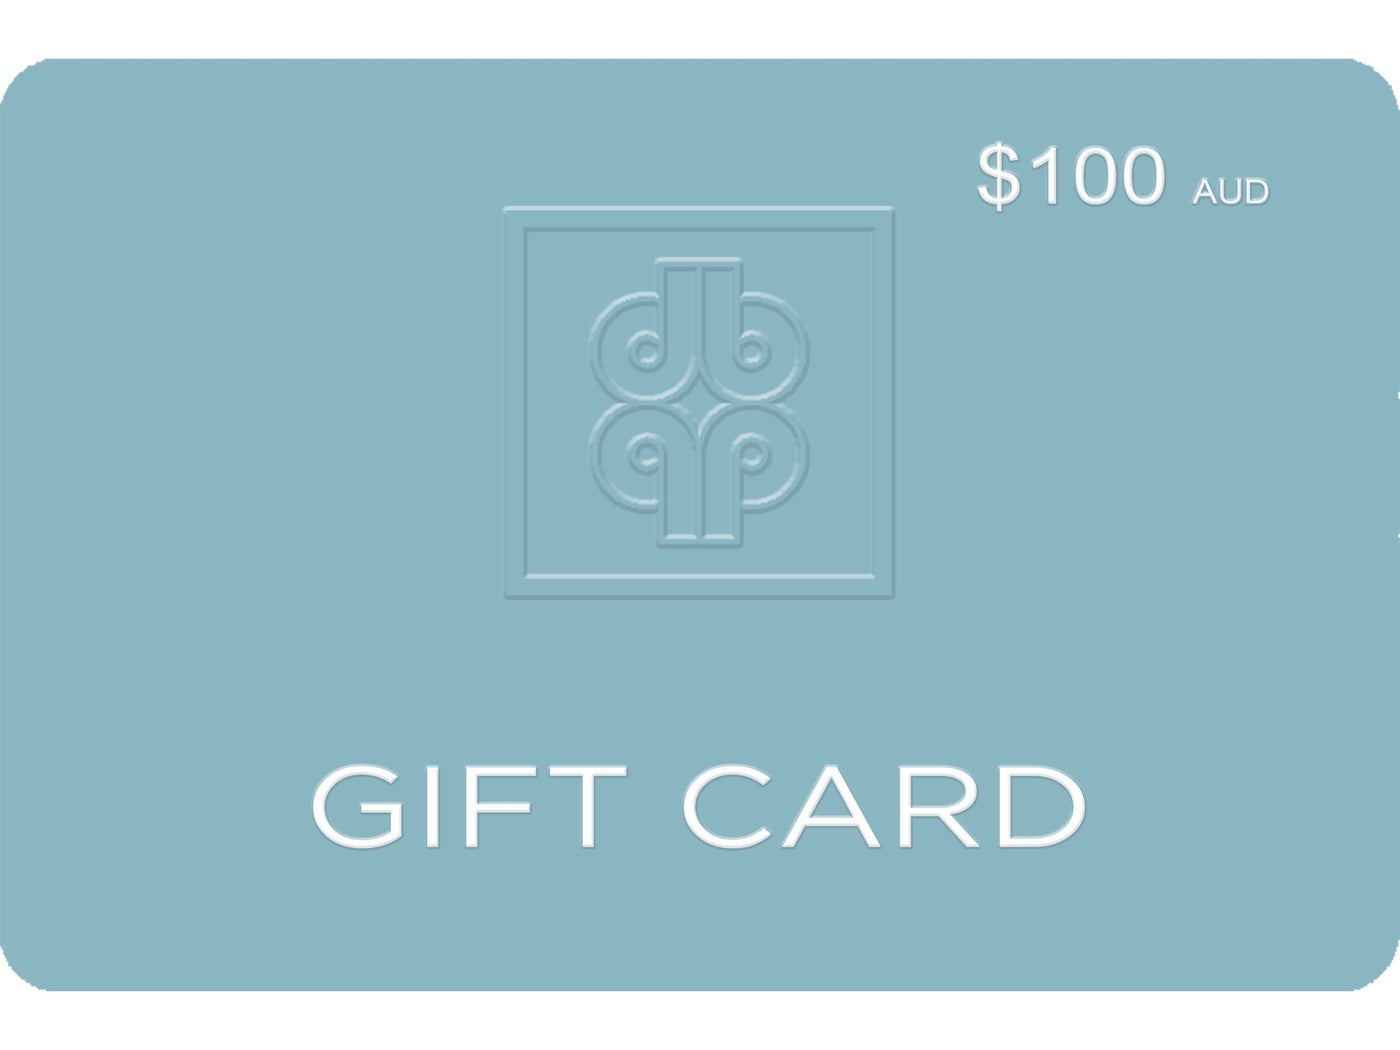 Diane Bergeron Gift Card (Australian Dollars)